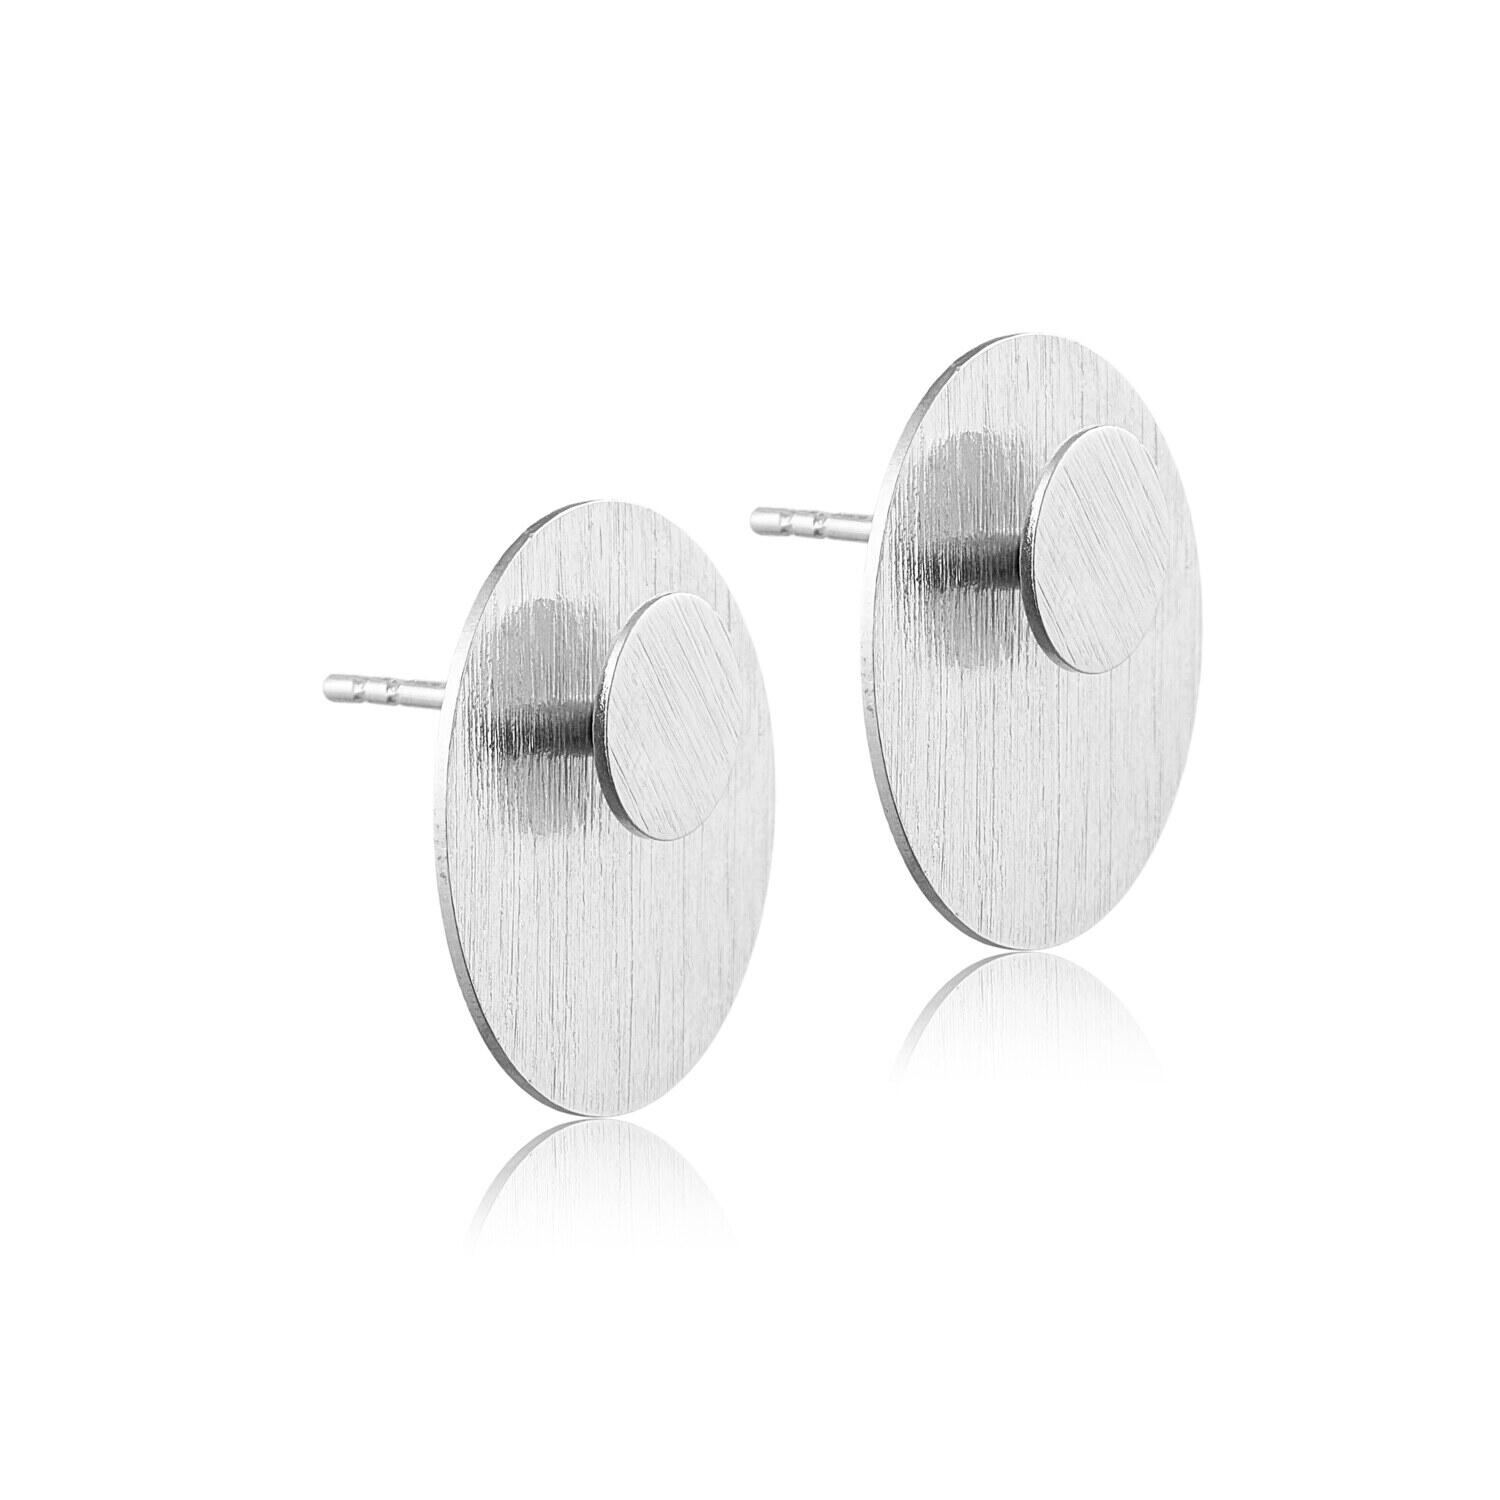 Cirkel i cirkel ørering - sølv - 2 stk (par)